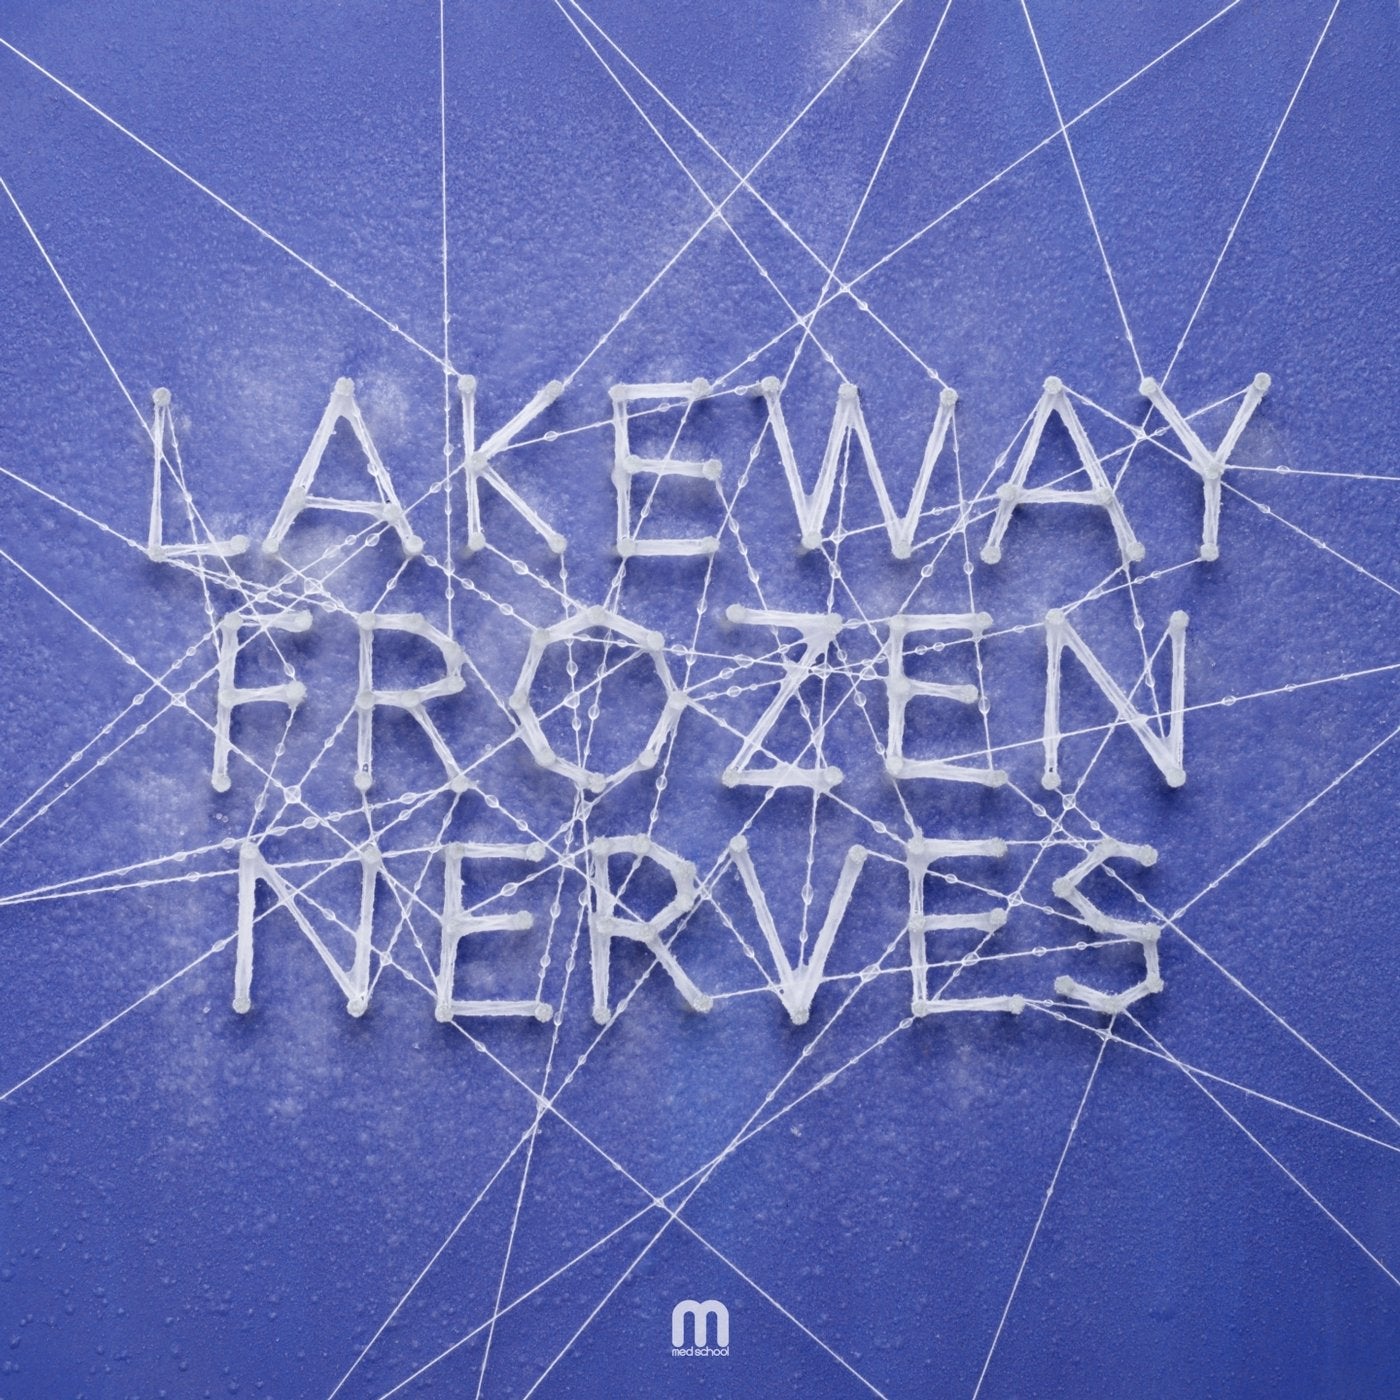 Frozen Nerves